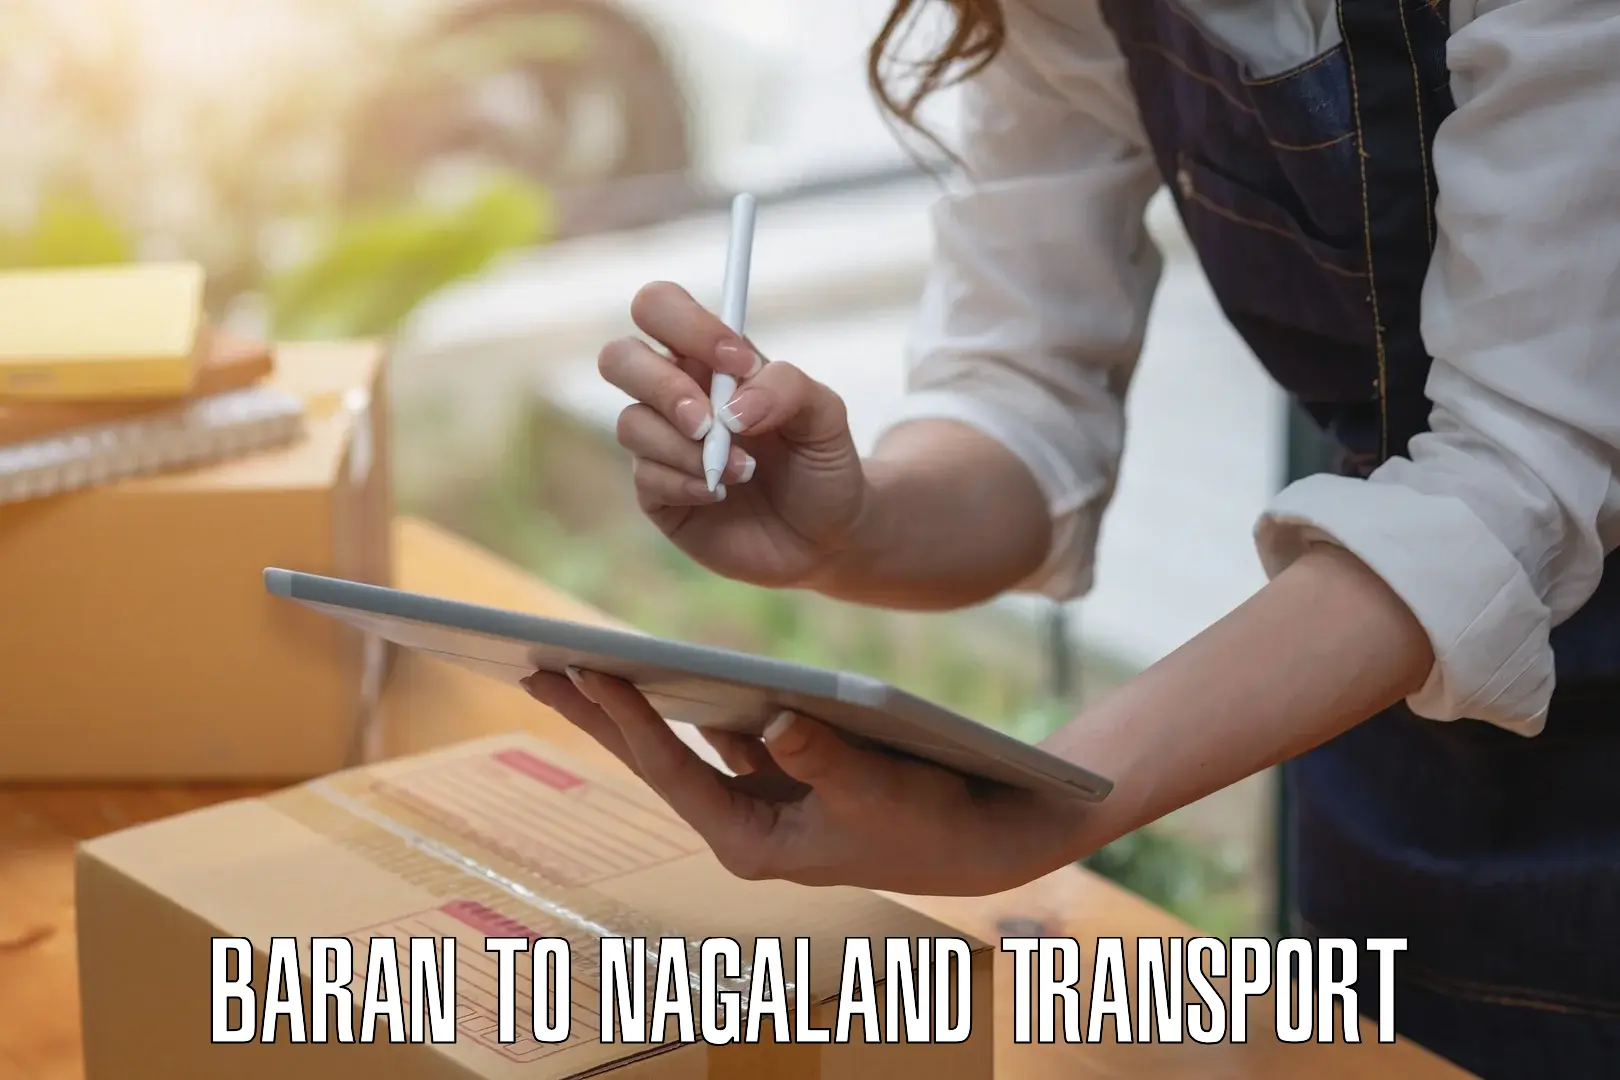 Shipping partner Baran to Nagaland